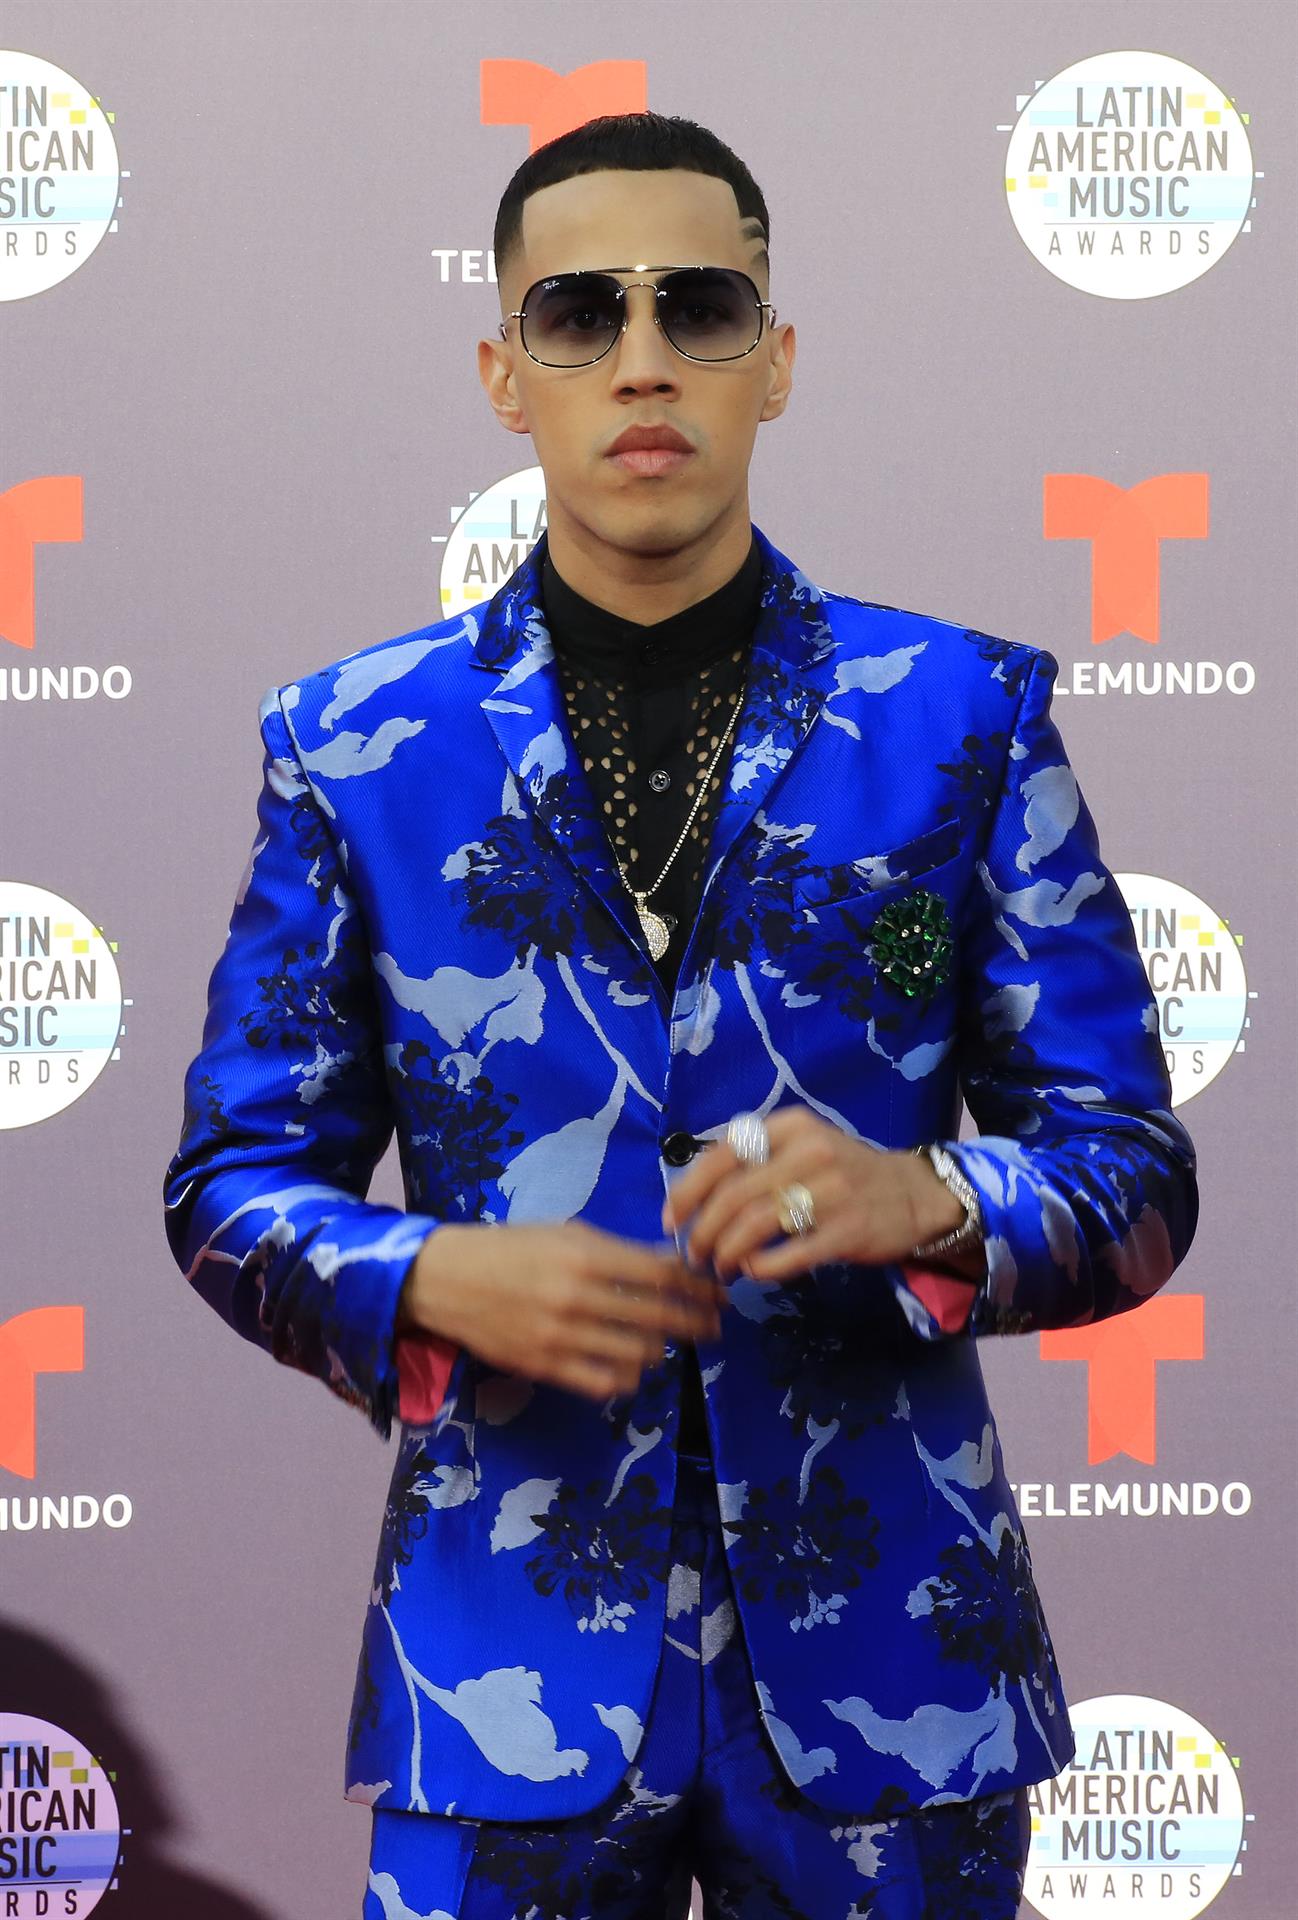 Fotografía de archivo fechada el 25 de octubre de 2018 que muestra al cantante puertorriqueño Brytiago mientras posa en la alfombra roja de la cuarta edición de los Latin American Music Awards (Latin AMAs), en el Teatro Dolby de Hollywood, Los Ángeles (EE.UU.). EFE/David Amador Rivera
